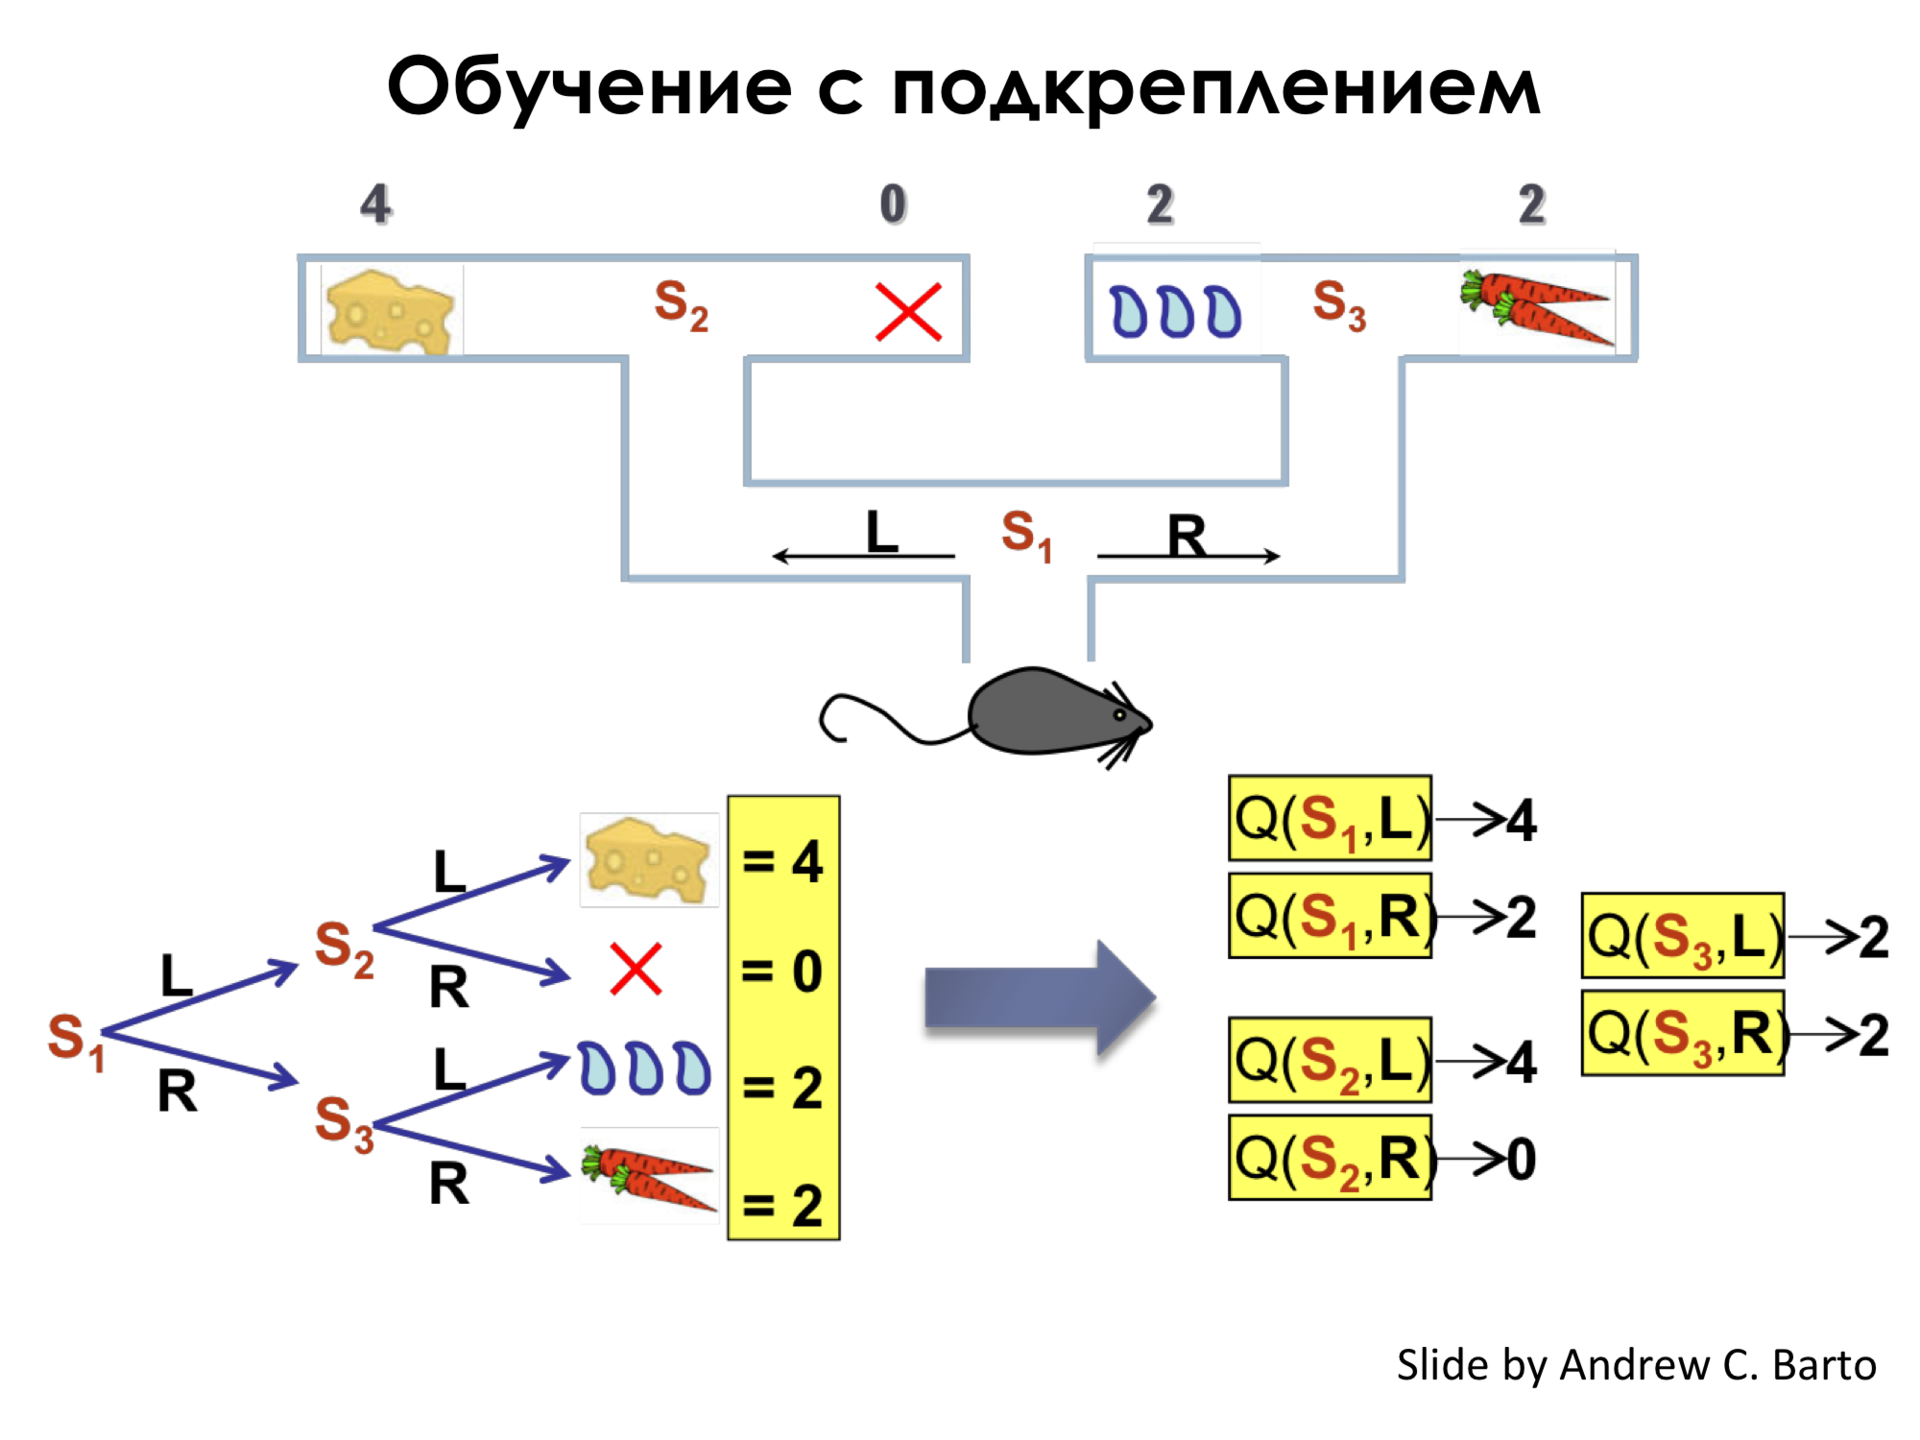 Самое главное о нейронных сетях. Лекция в Яндексе - 45